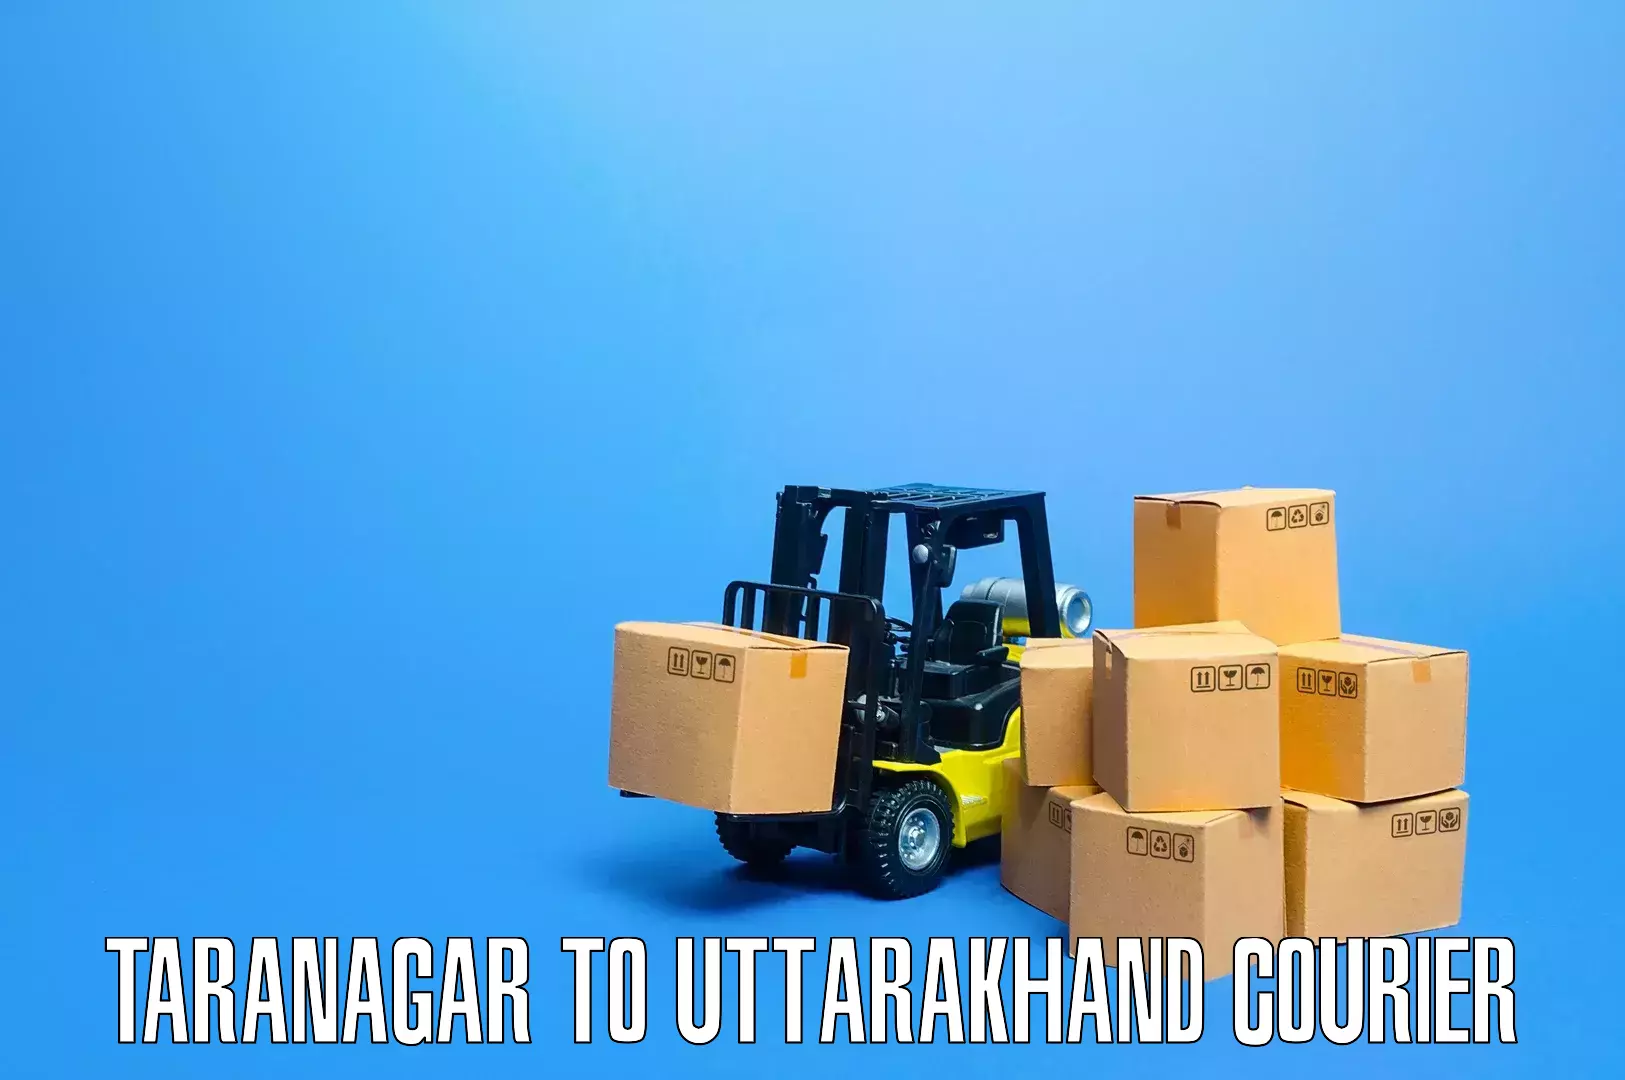 Home moving experts Taranagar to Uttarakhand